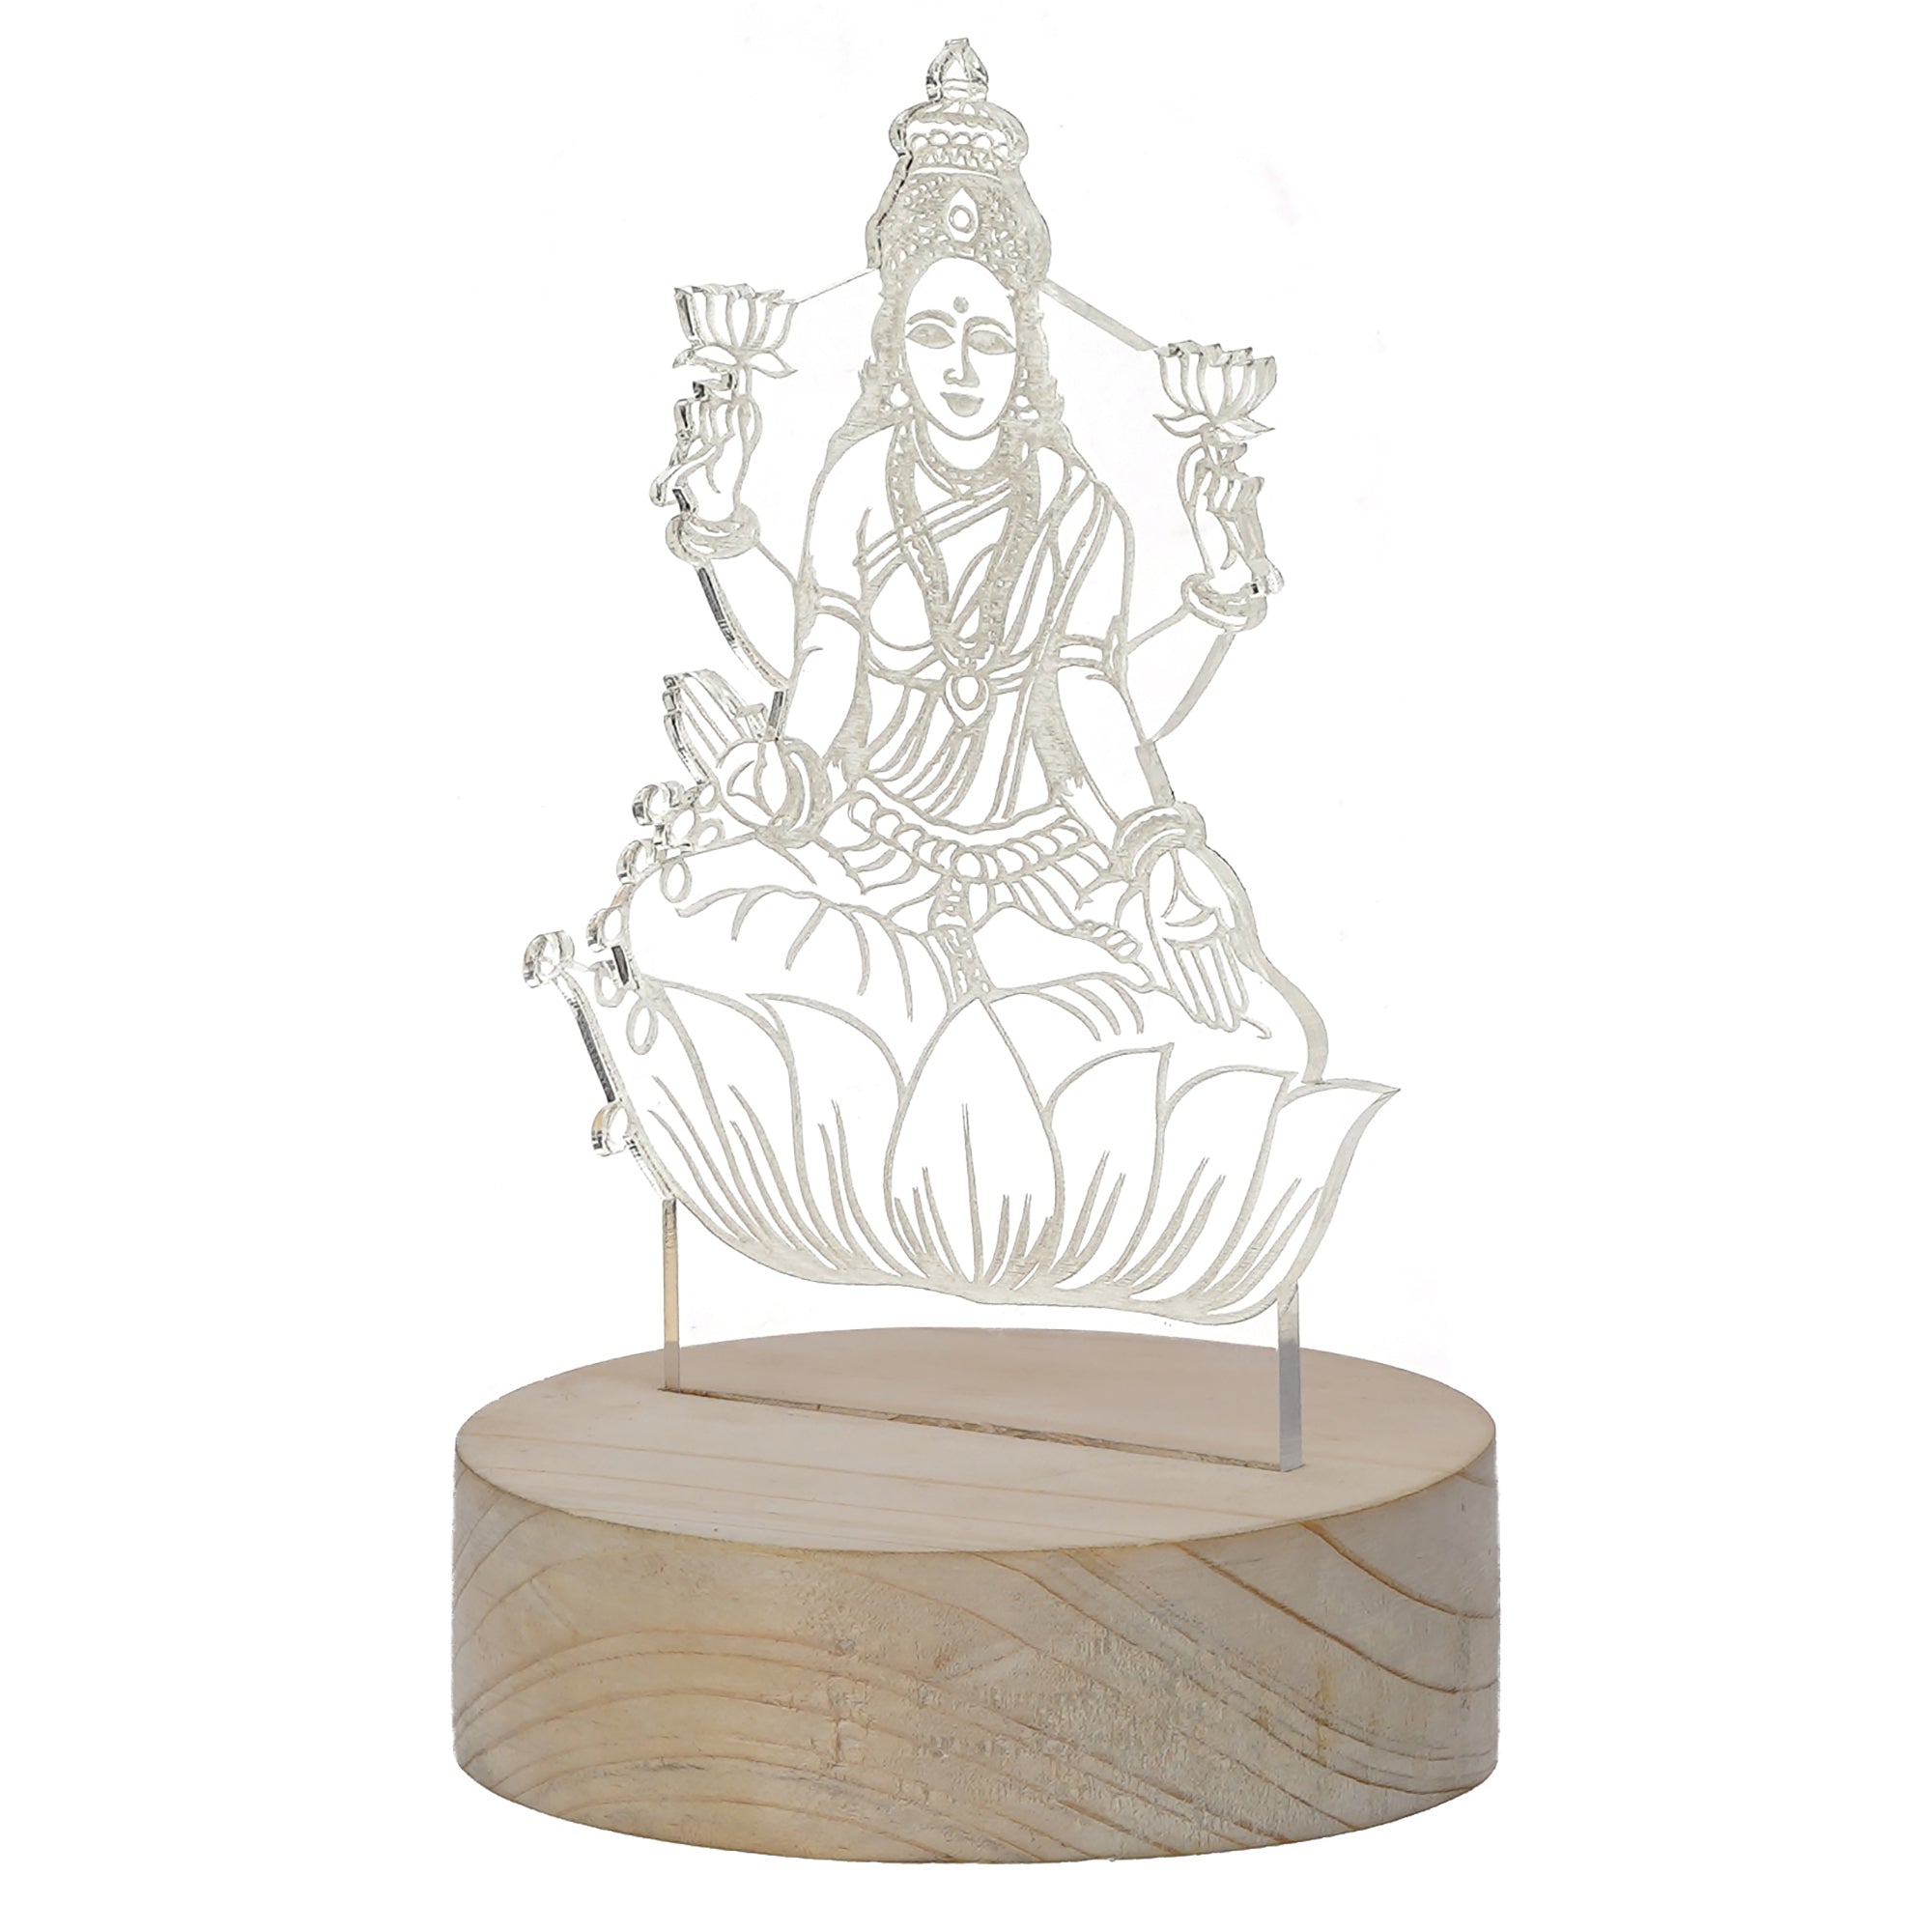 Goddess Laxmi Design Carved on Acrylic & Wood Base Night Lamp 5